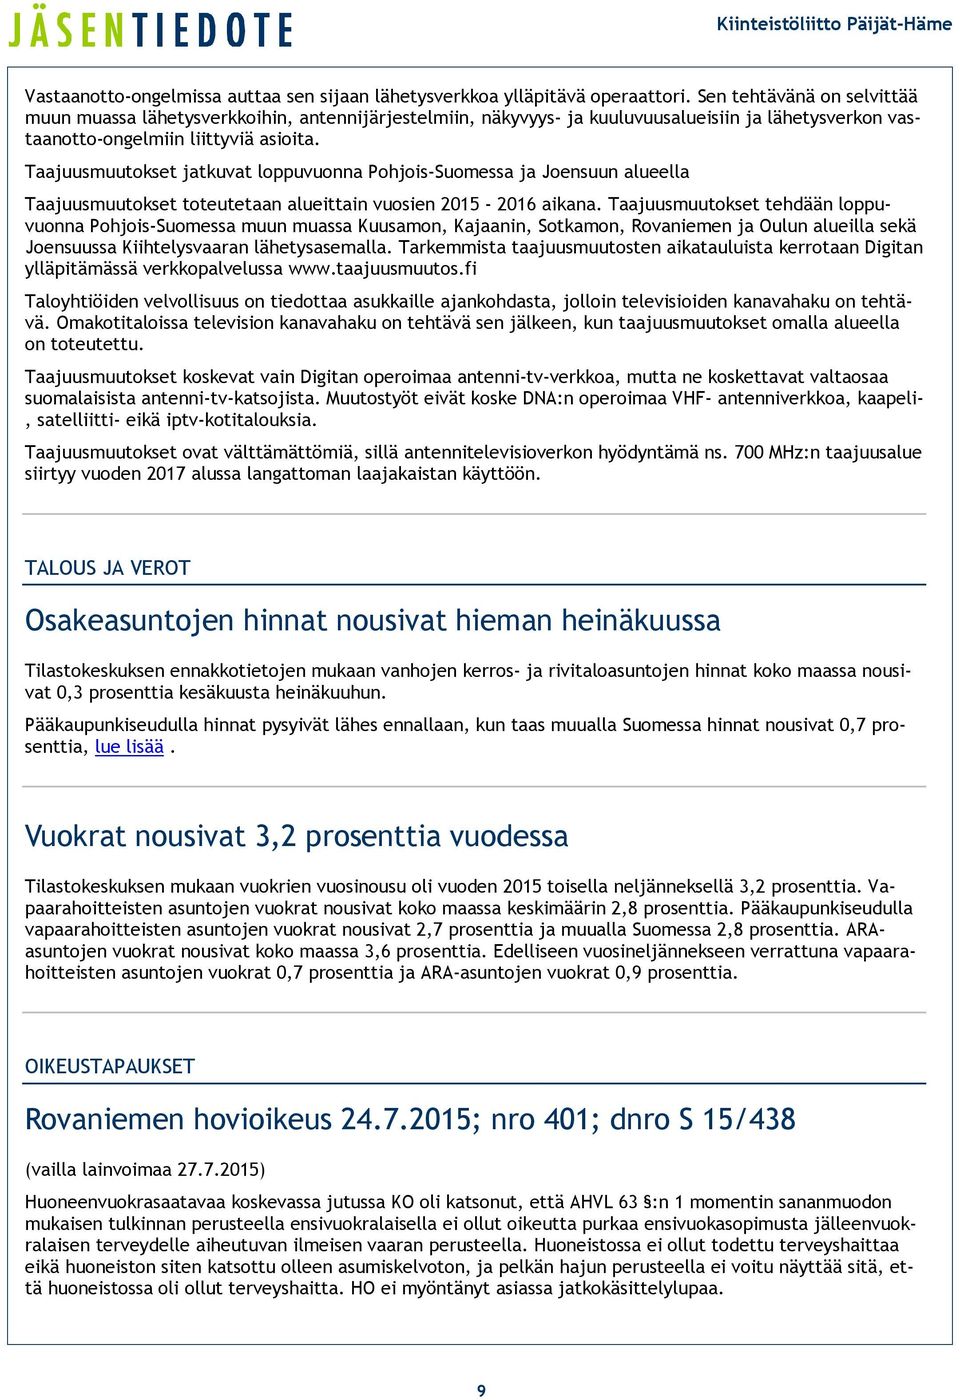 Taajuusmuutokset jatkuvat loppuvuonna Pohjois-Suomessa ja Joensuun alueella Taajuusmuutokset toteutetaan alueittain vuosien 2015-2016 aikana.